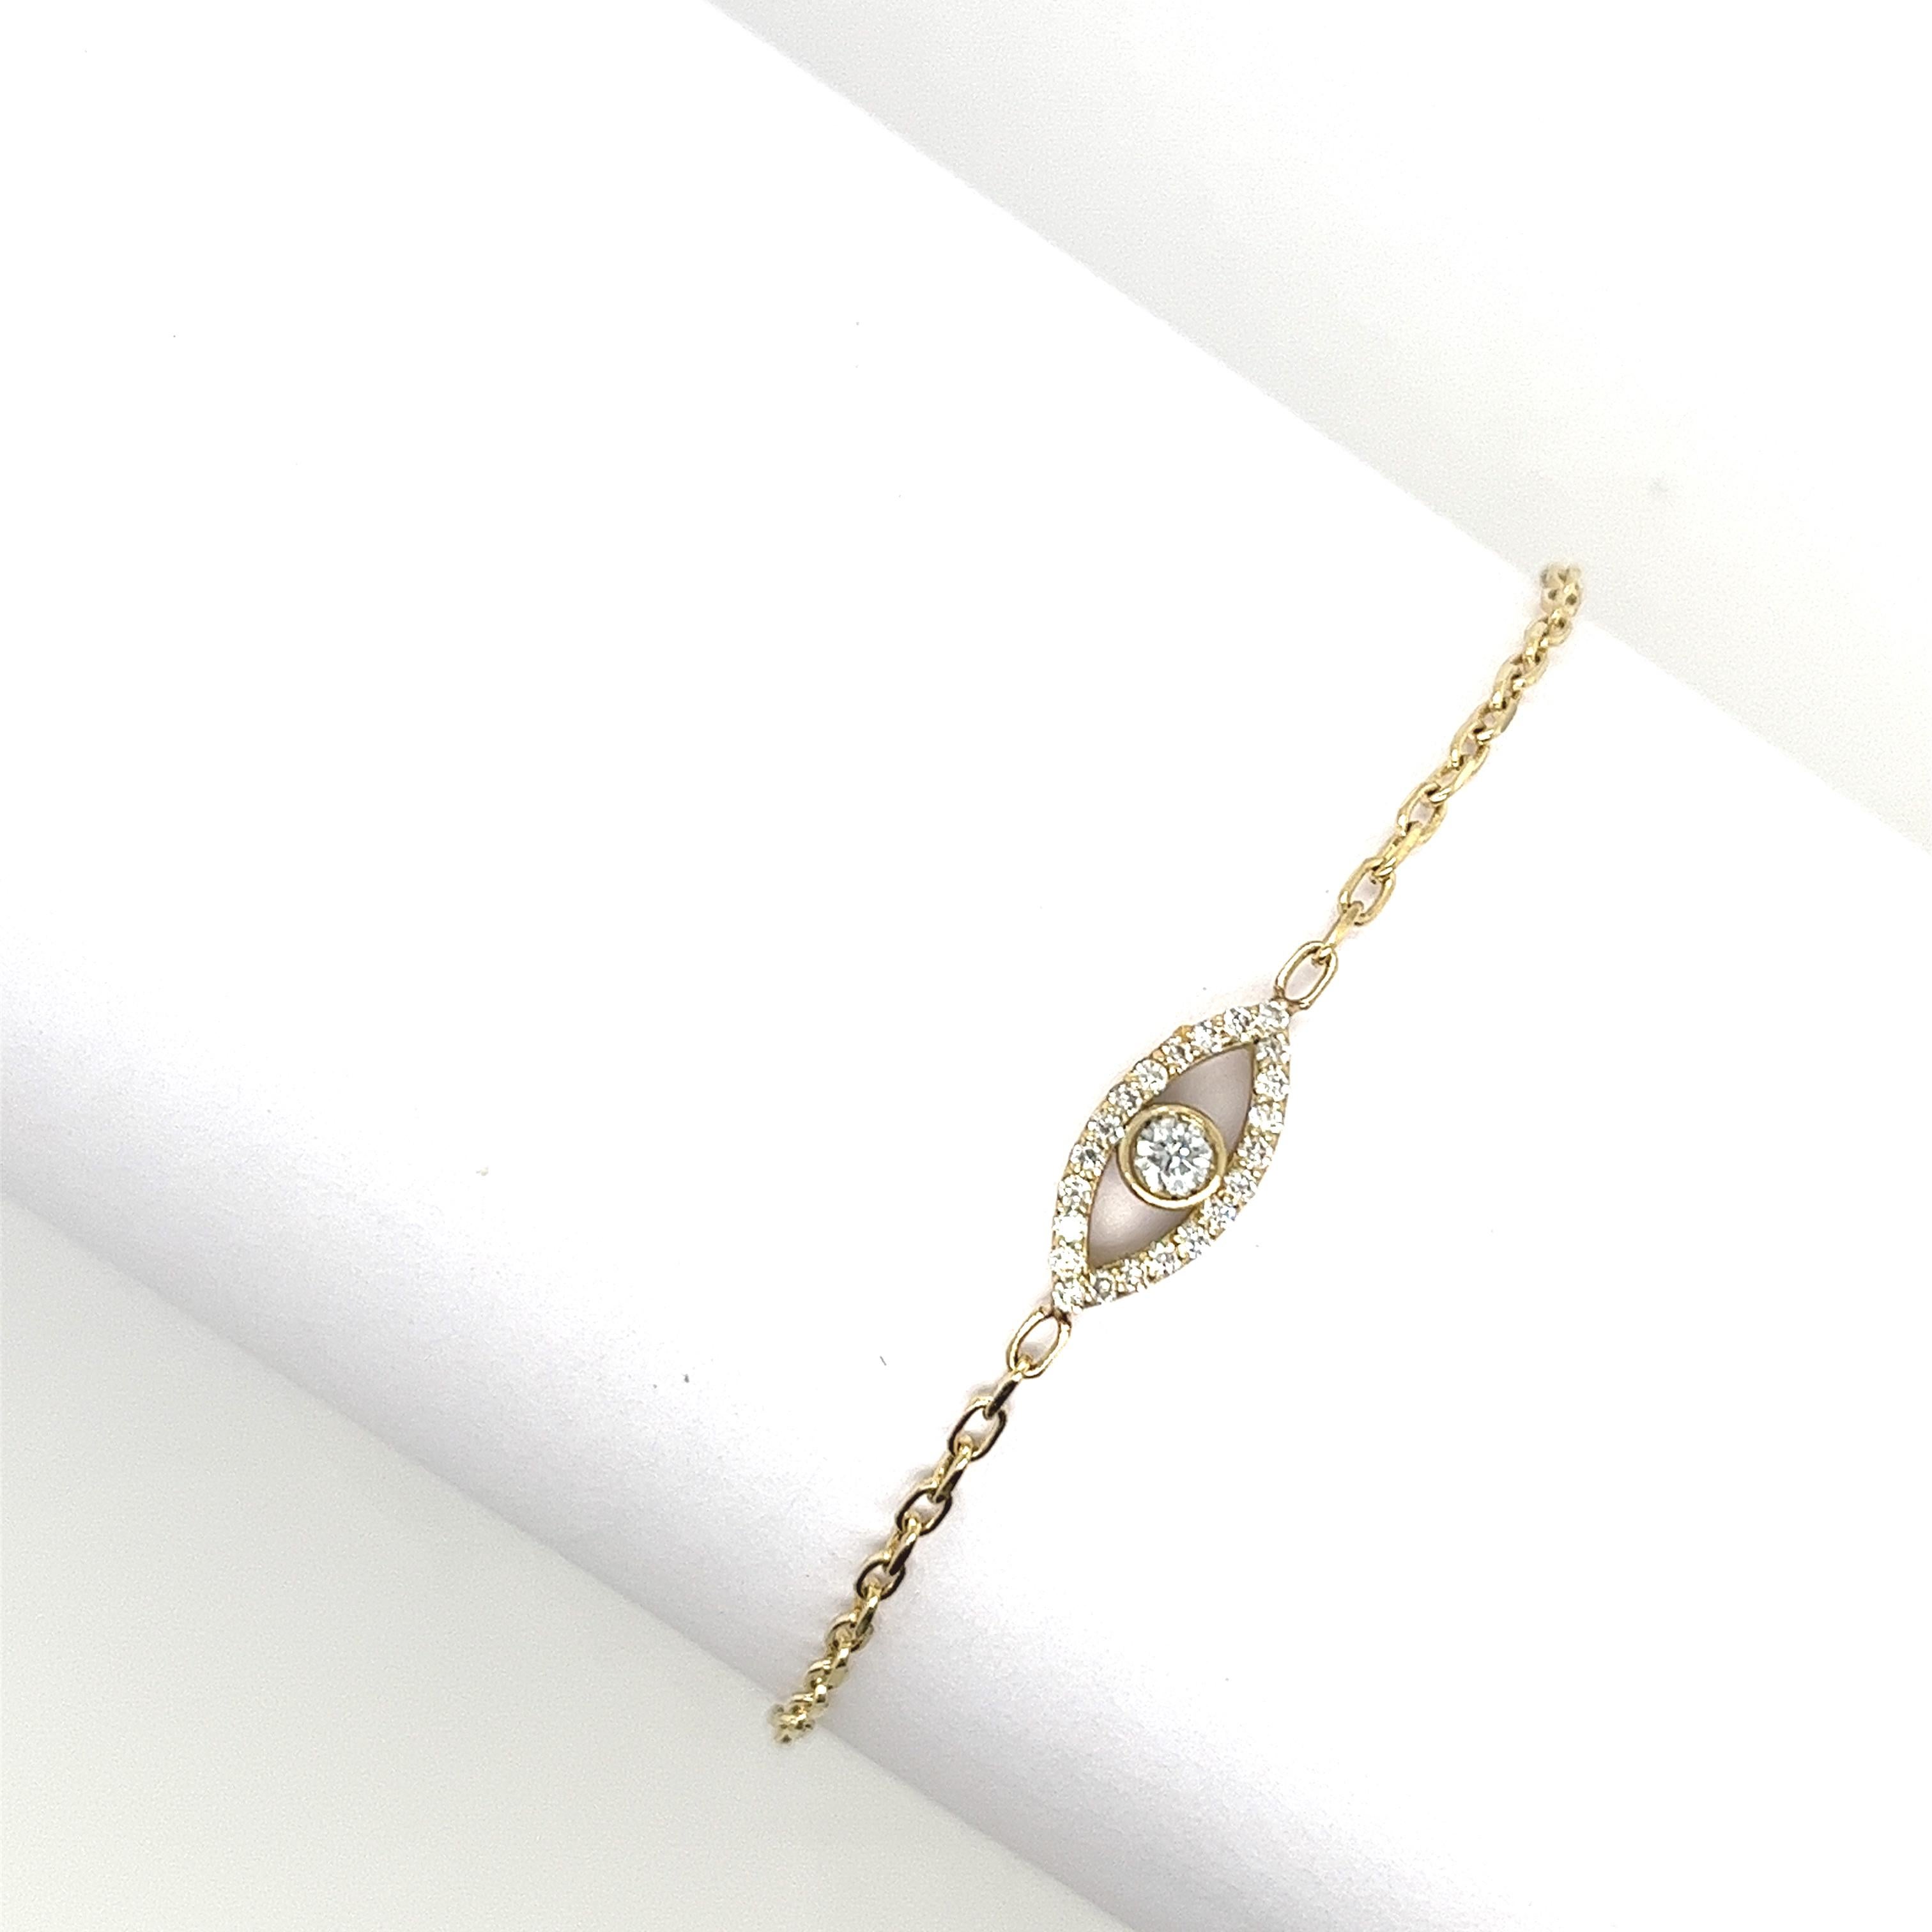 Fabriqué par Jewellery Cave- notre exquis bracelet maléfique de 0,18ct serti de diamants - une fusion enchanteresse de style et de symbolisme. Réalisé en or jaune 9ct, ce bracelet envoûtant est orné d'une breloque en forme d'œil maléfique, qui